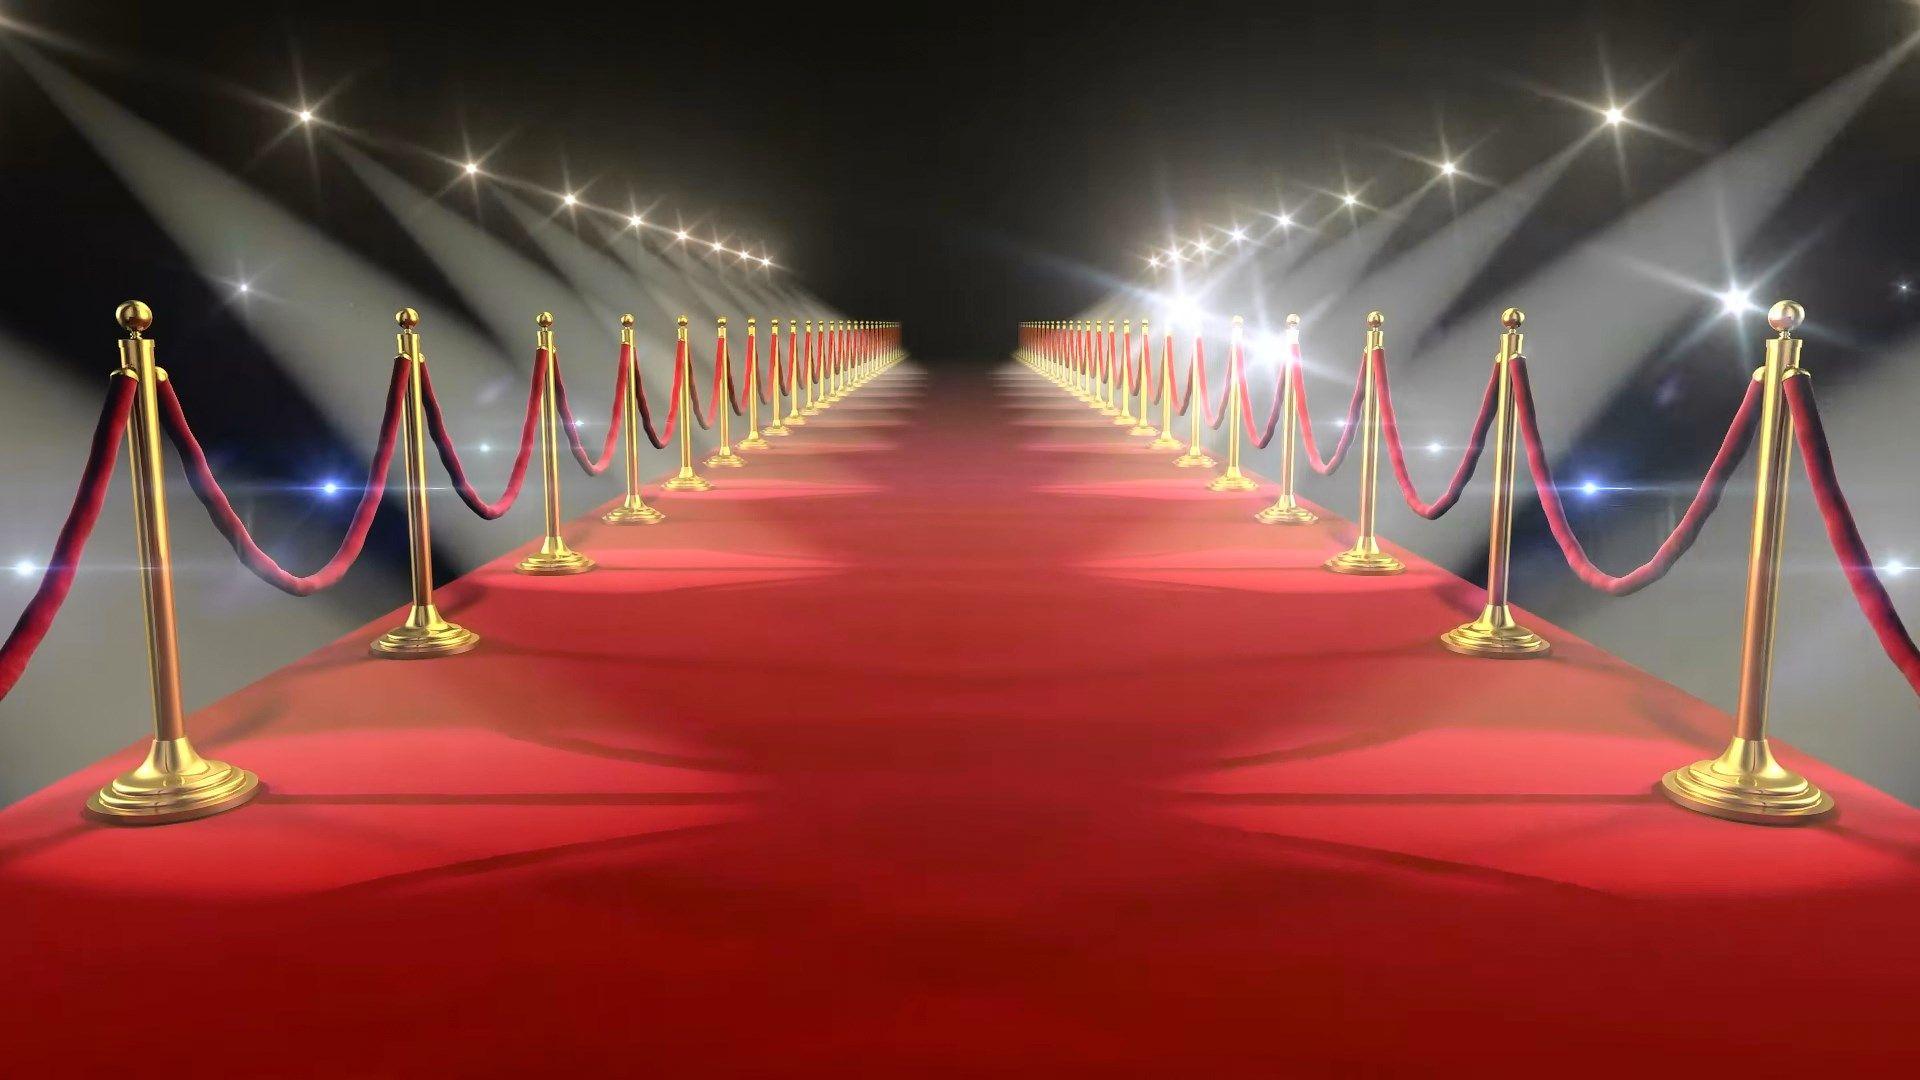 Bạn yêu thích sự lộng lẫy của thảm đỏ và sự lung linh của ánh đèn? Bức tranh hình nền thảm đỏ này chắc chắn sẽ làm bạn hài lòng. Tham gia vào không gian sang trọng và rực rỡ của bức hình này, giúp bạn cảm thấy như một ngôi sao đi trên thảm đỏ.